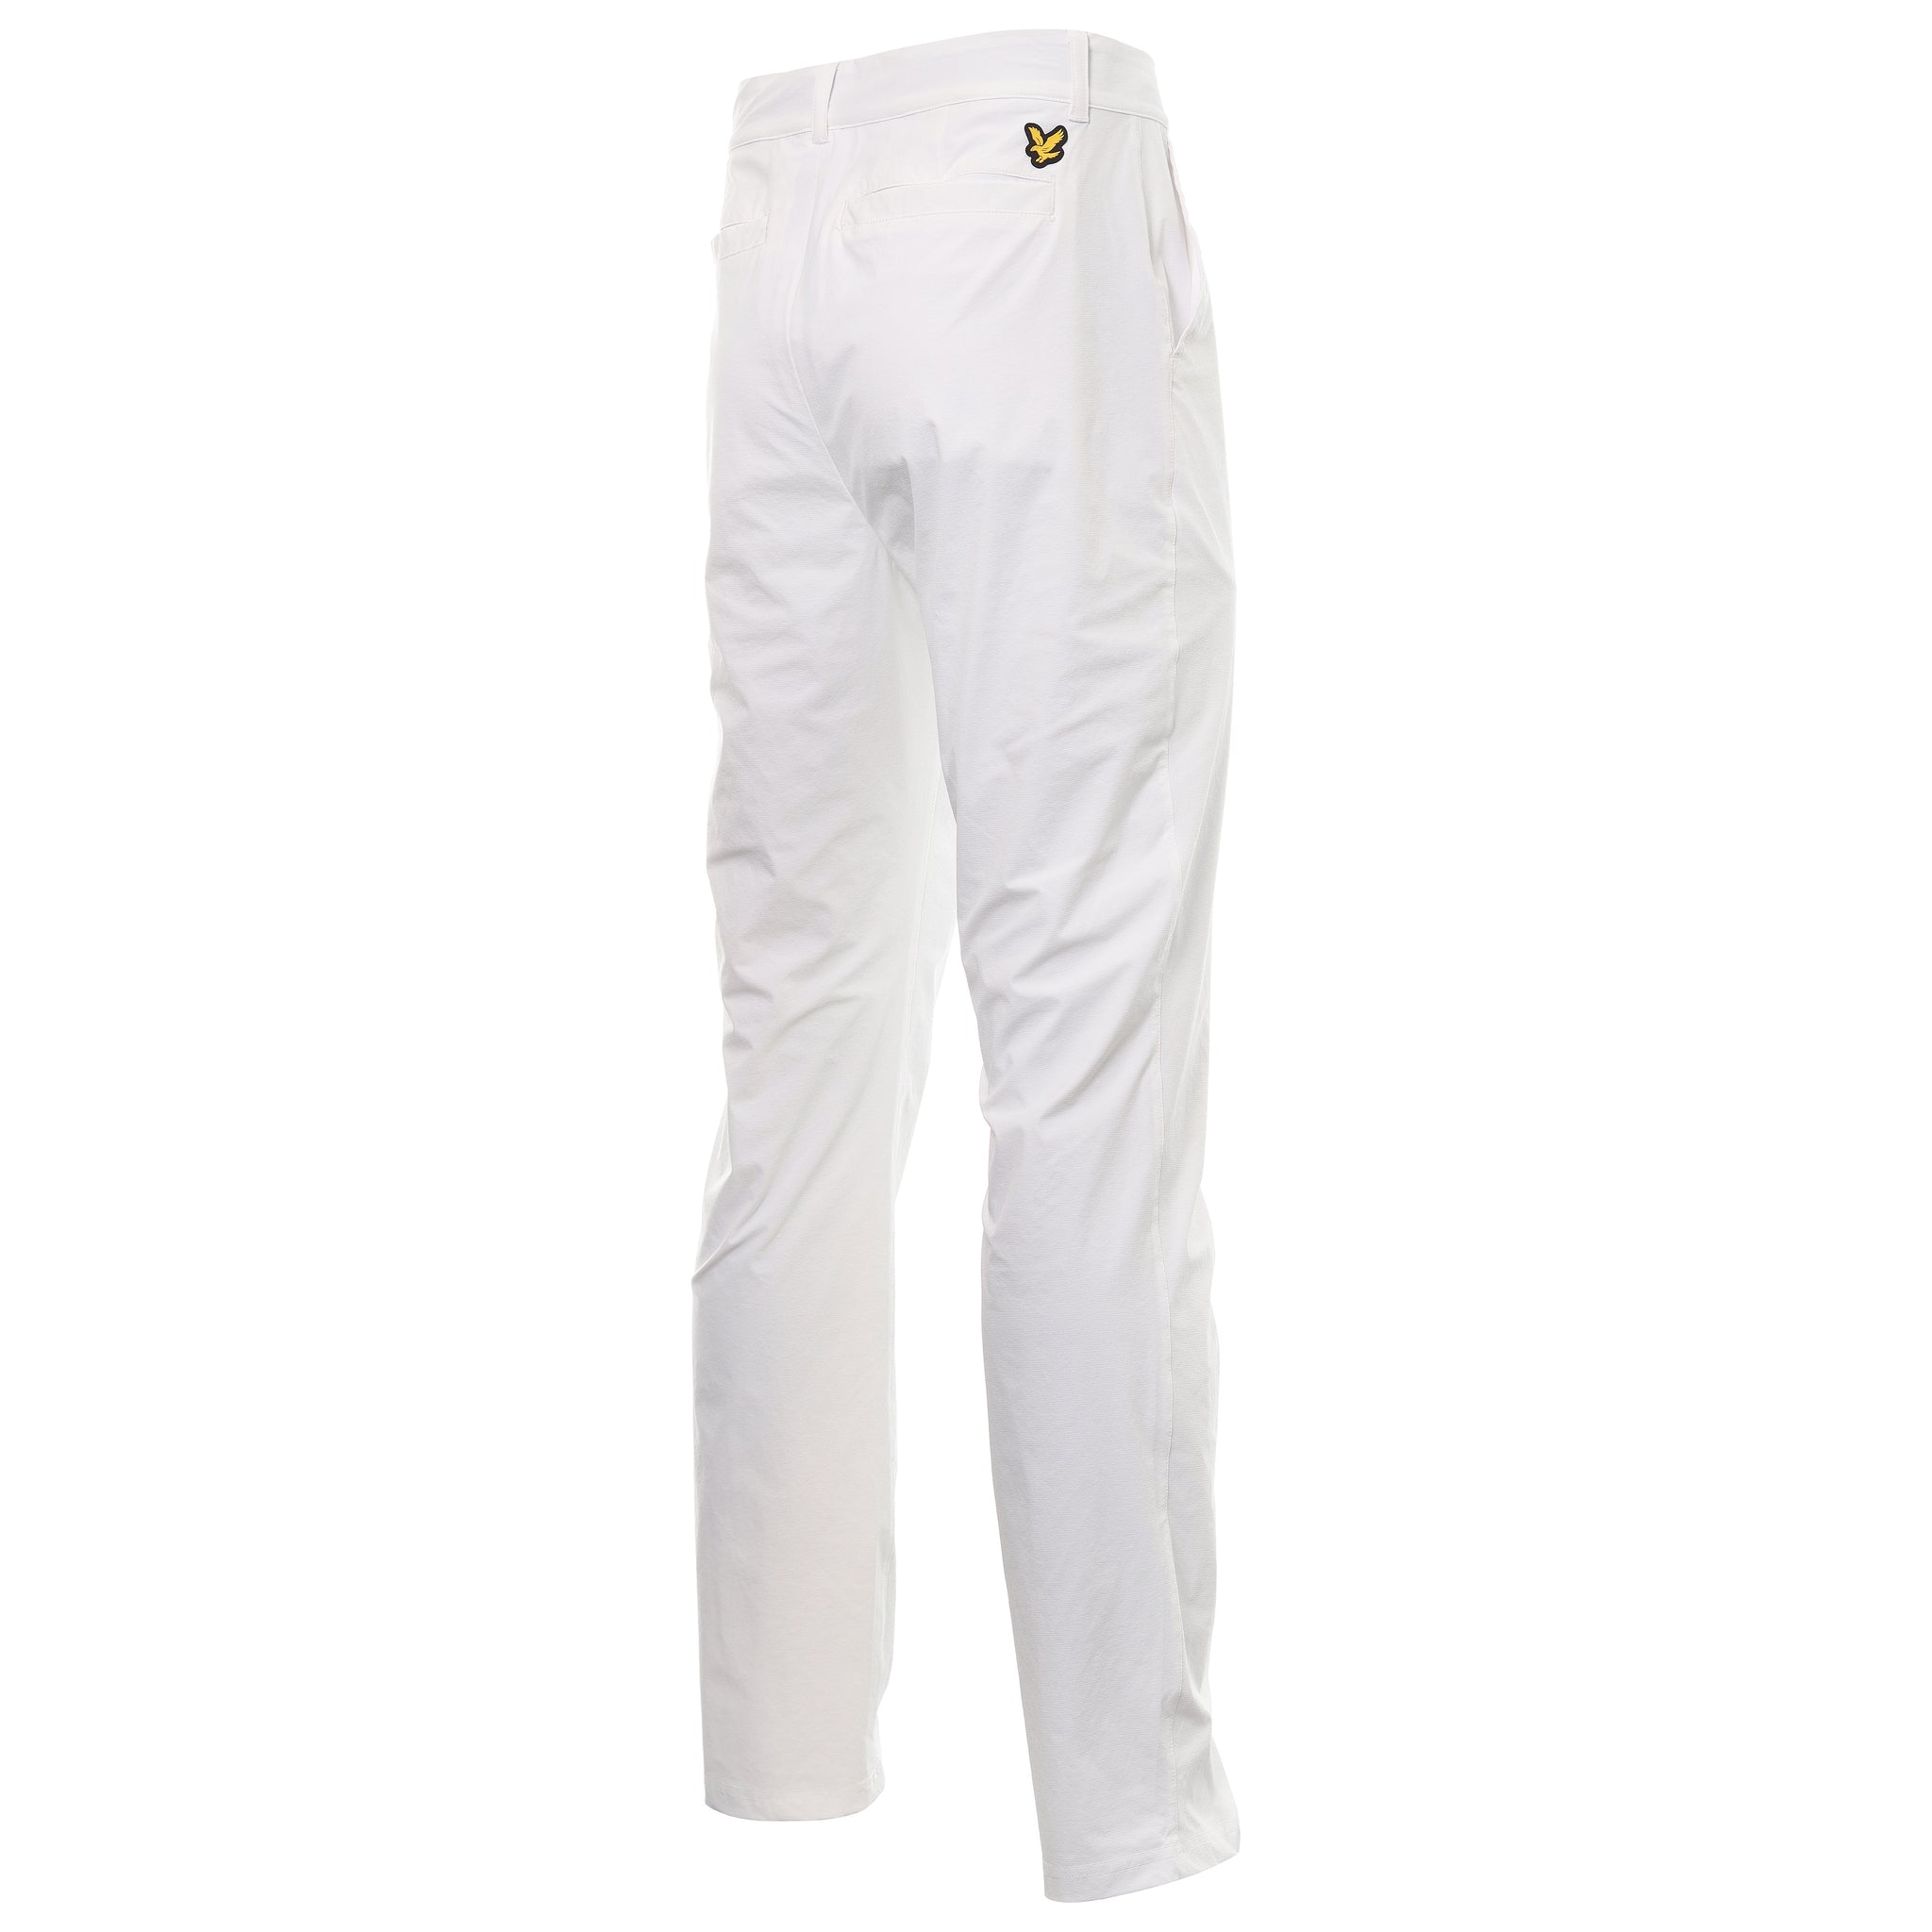 lyle-scott-golf-tech-trousers-tr1462gc-white-626